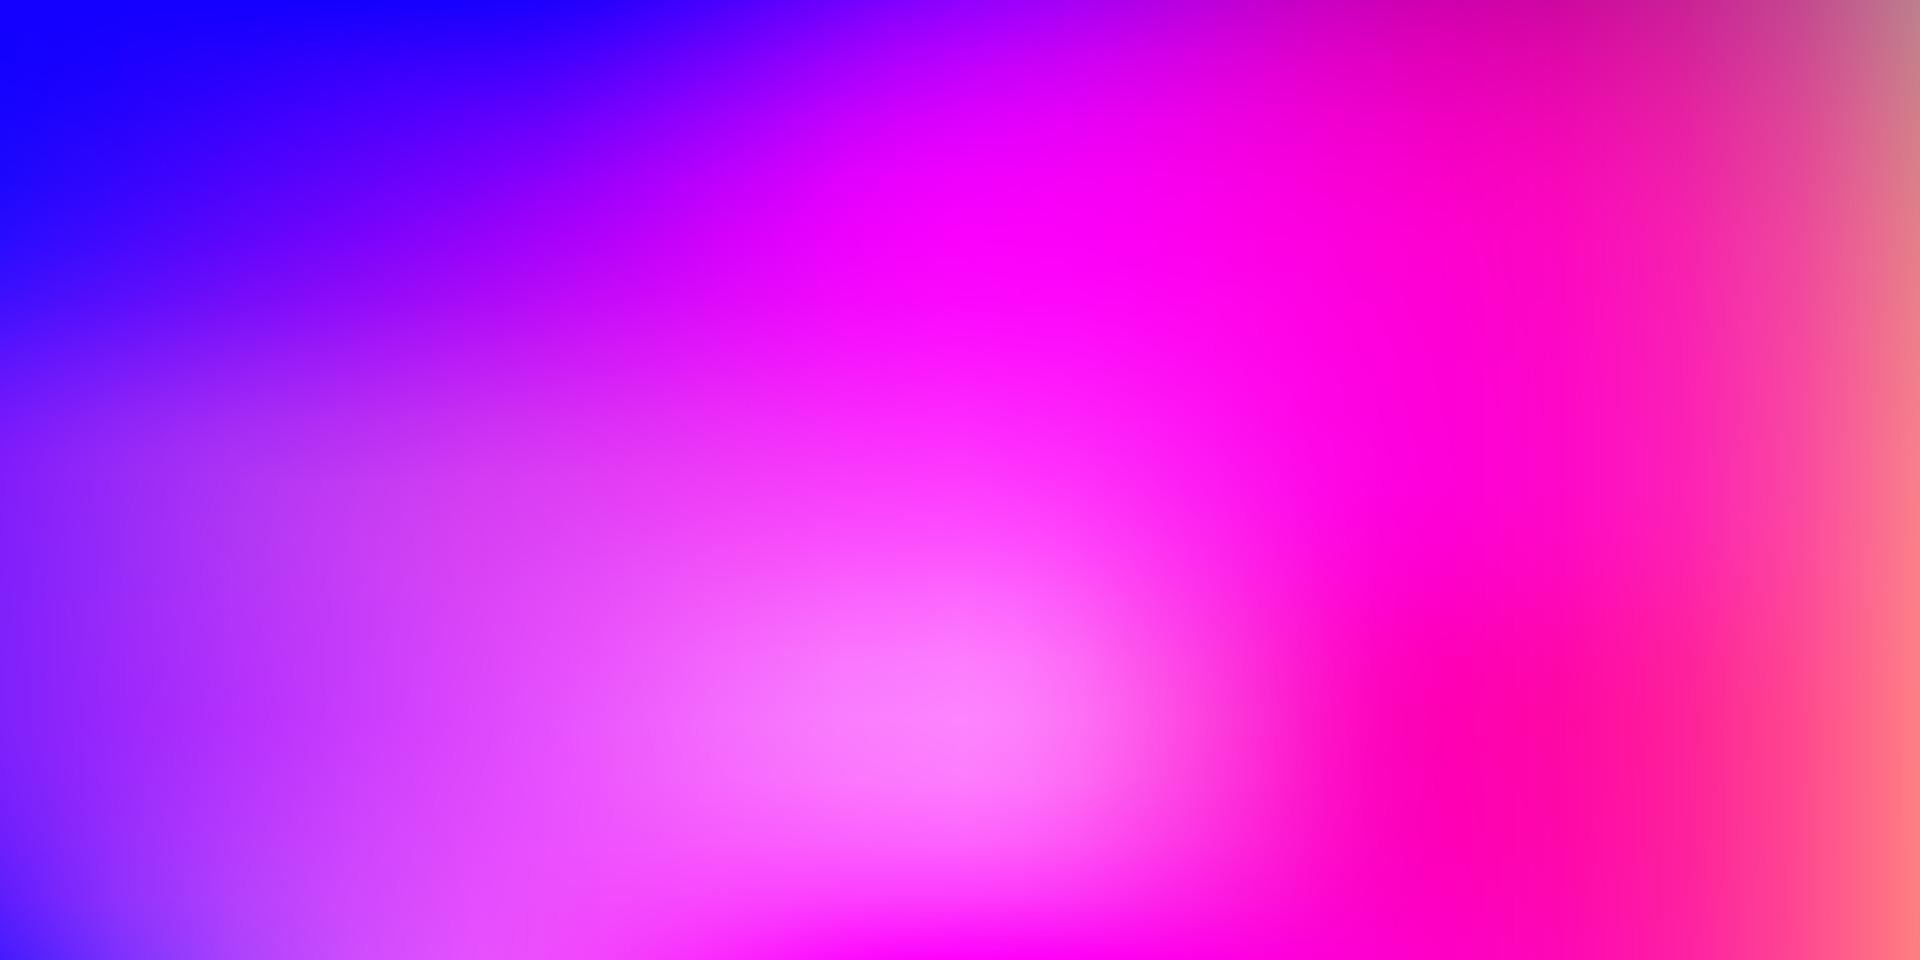 Fondo de desenfoque degradado de vector rosa claro, azul.